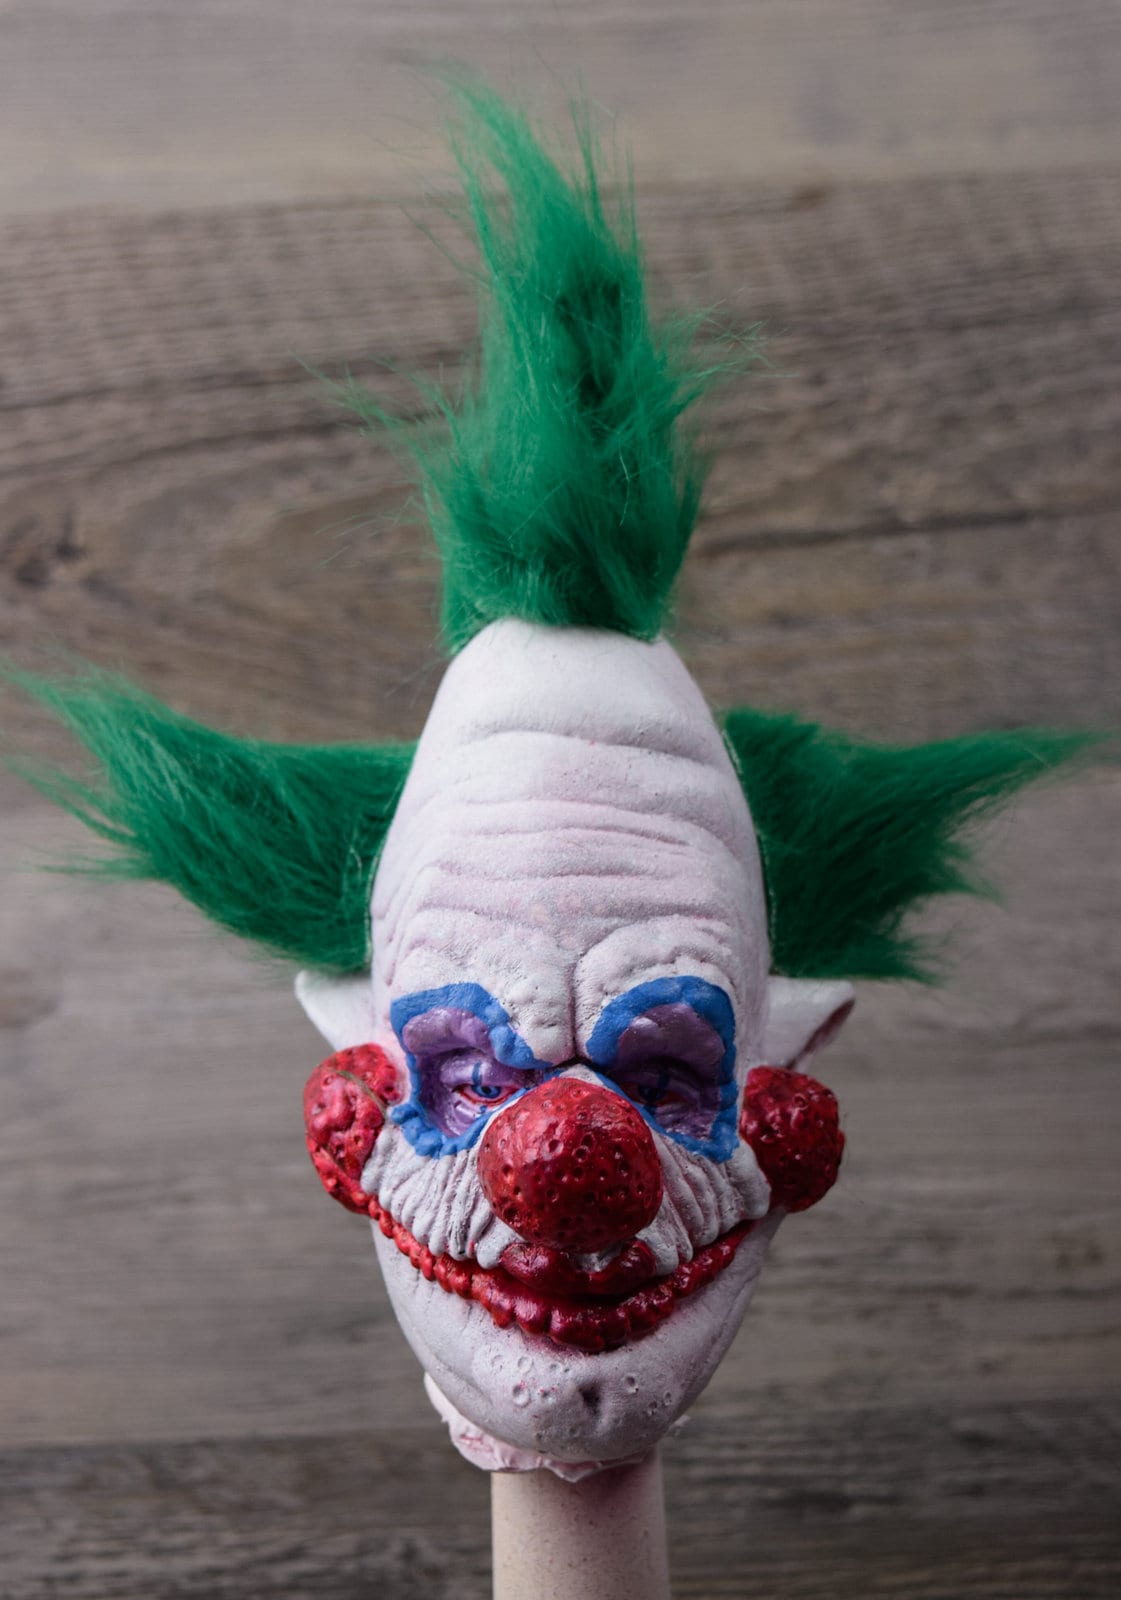 Hupe Clown, 18 cm online kaufen